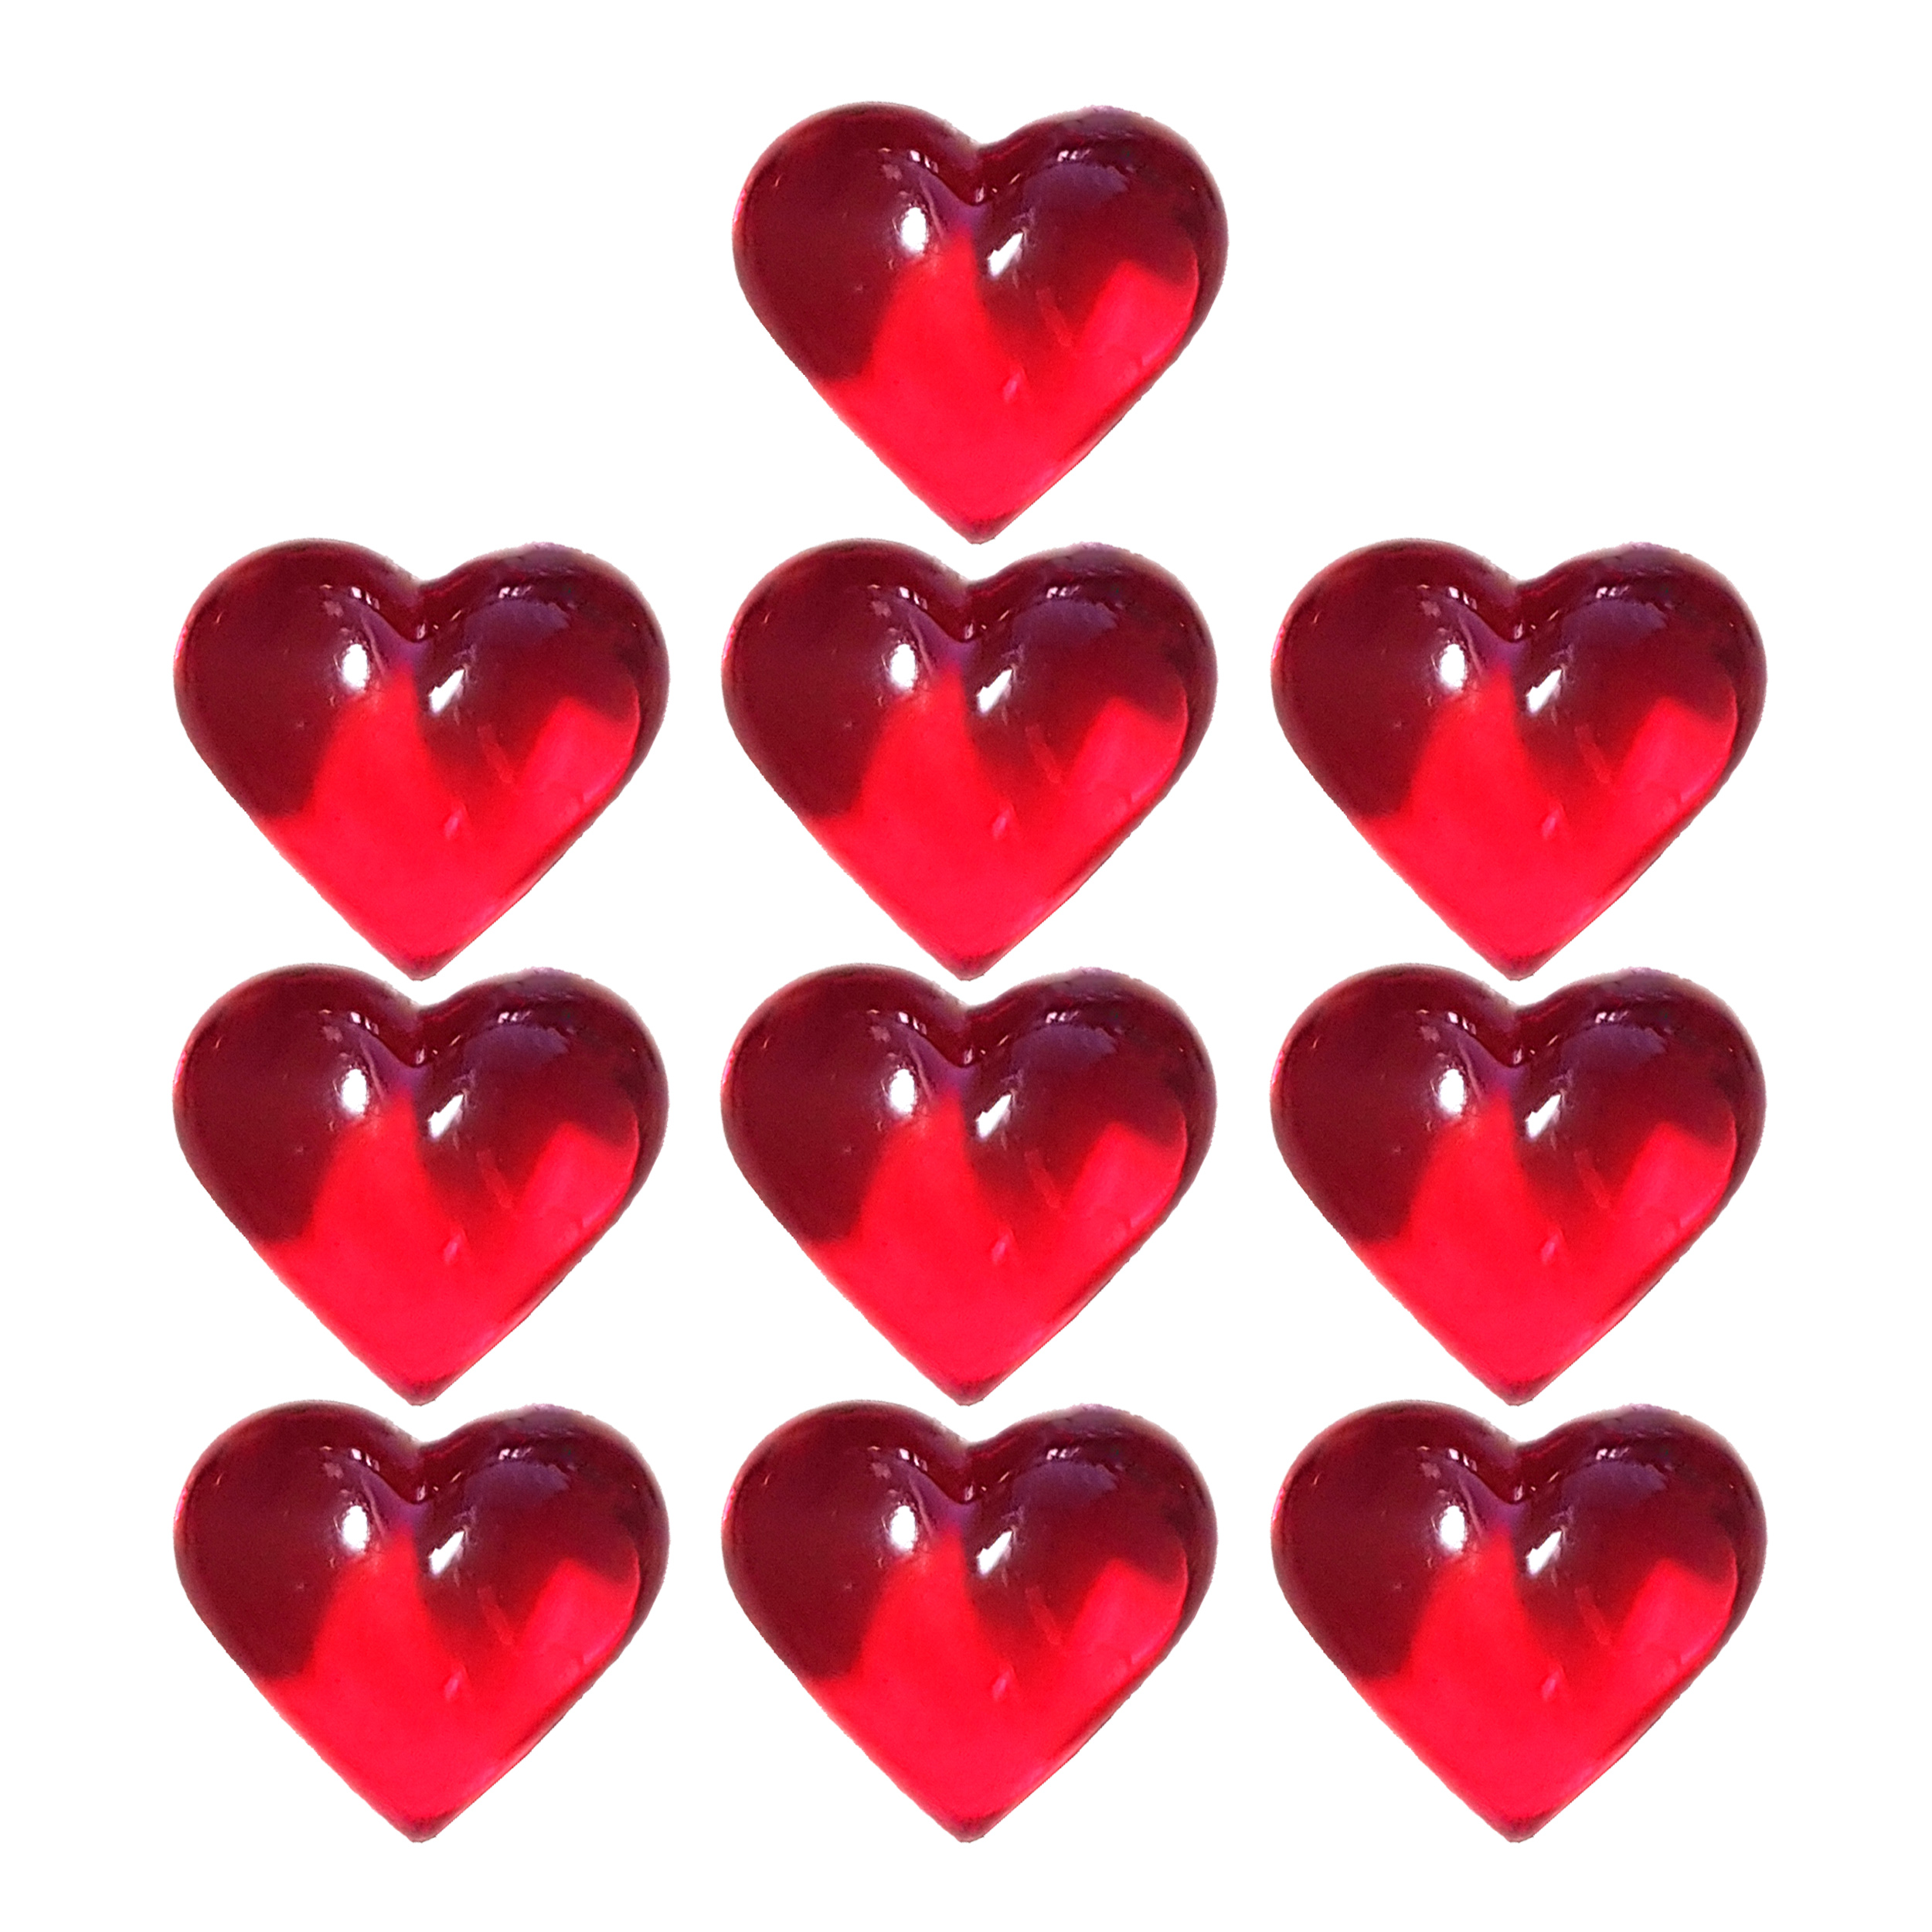 آنباکس ابزار کادویی مدل قلب بسته 10 عددی توسط محمدباقر اژدهاکش در تاریخ ۲۸ تیر ۱۴۰۰